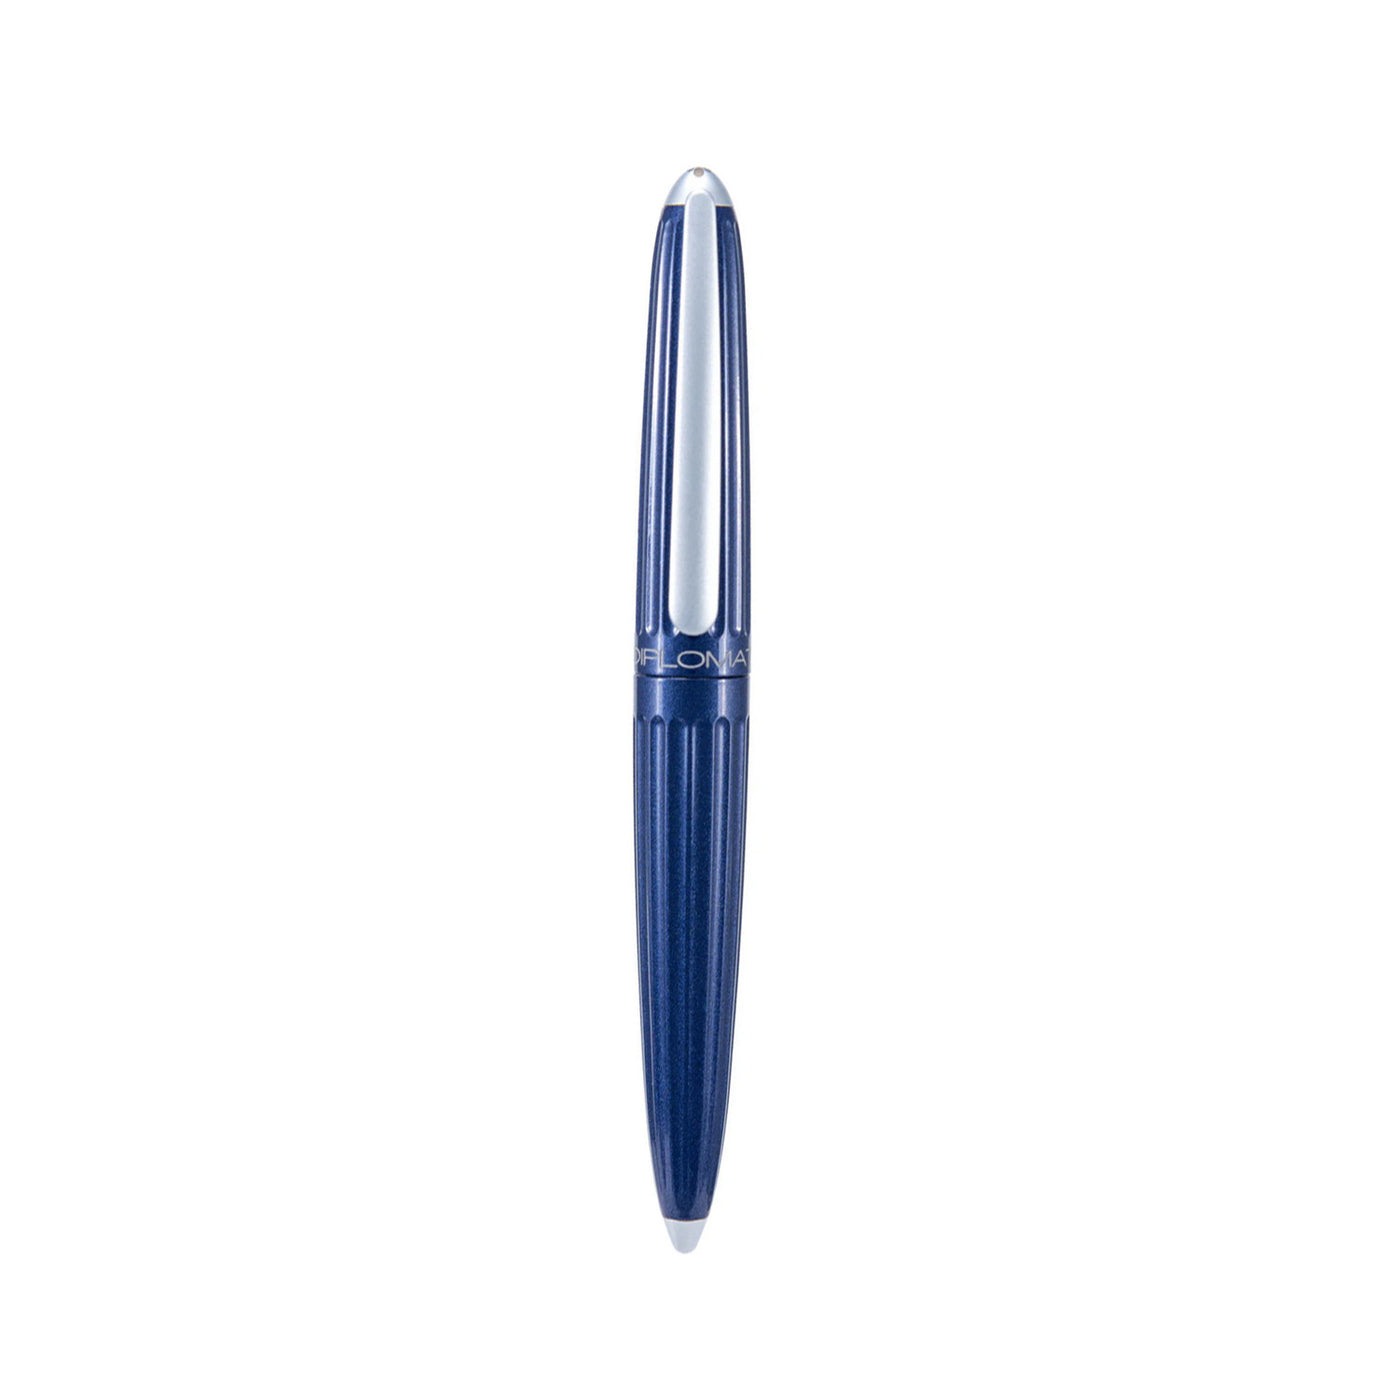  Diplomat Aero 14K Gold Fountain Pen - Midnight Blue 5